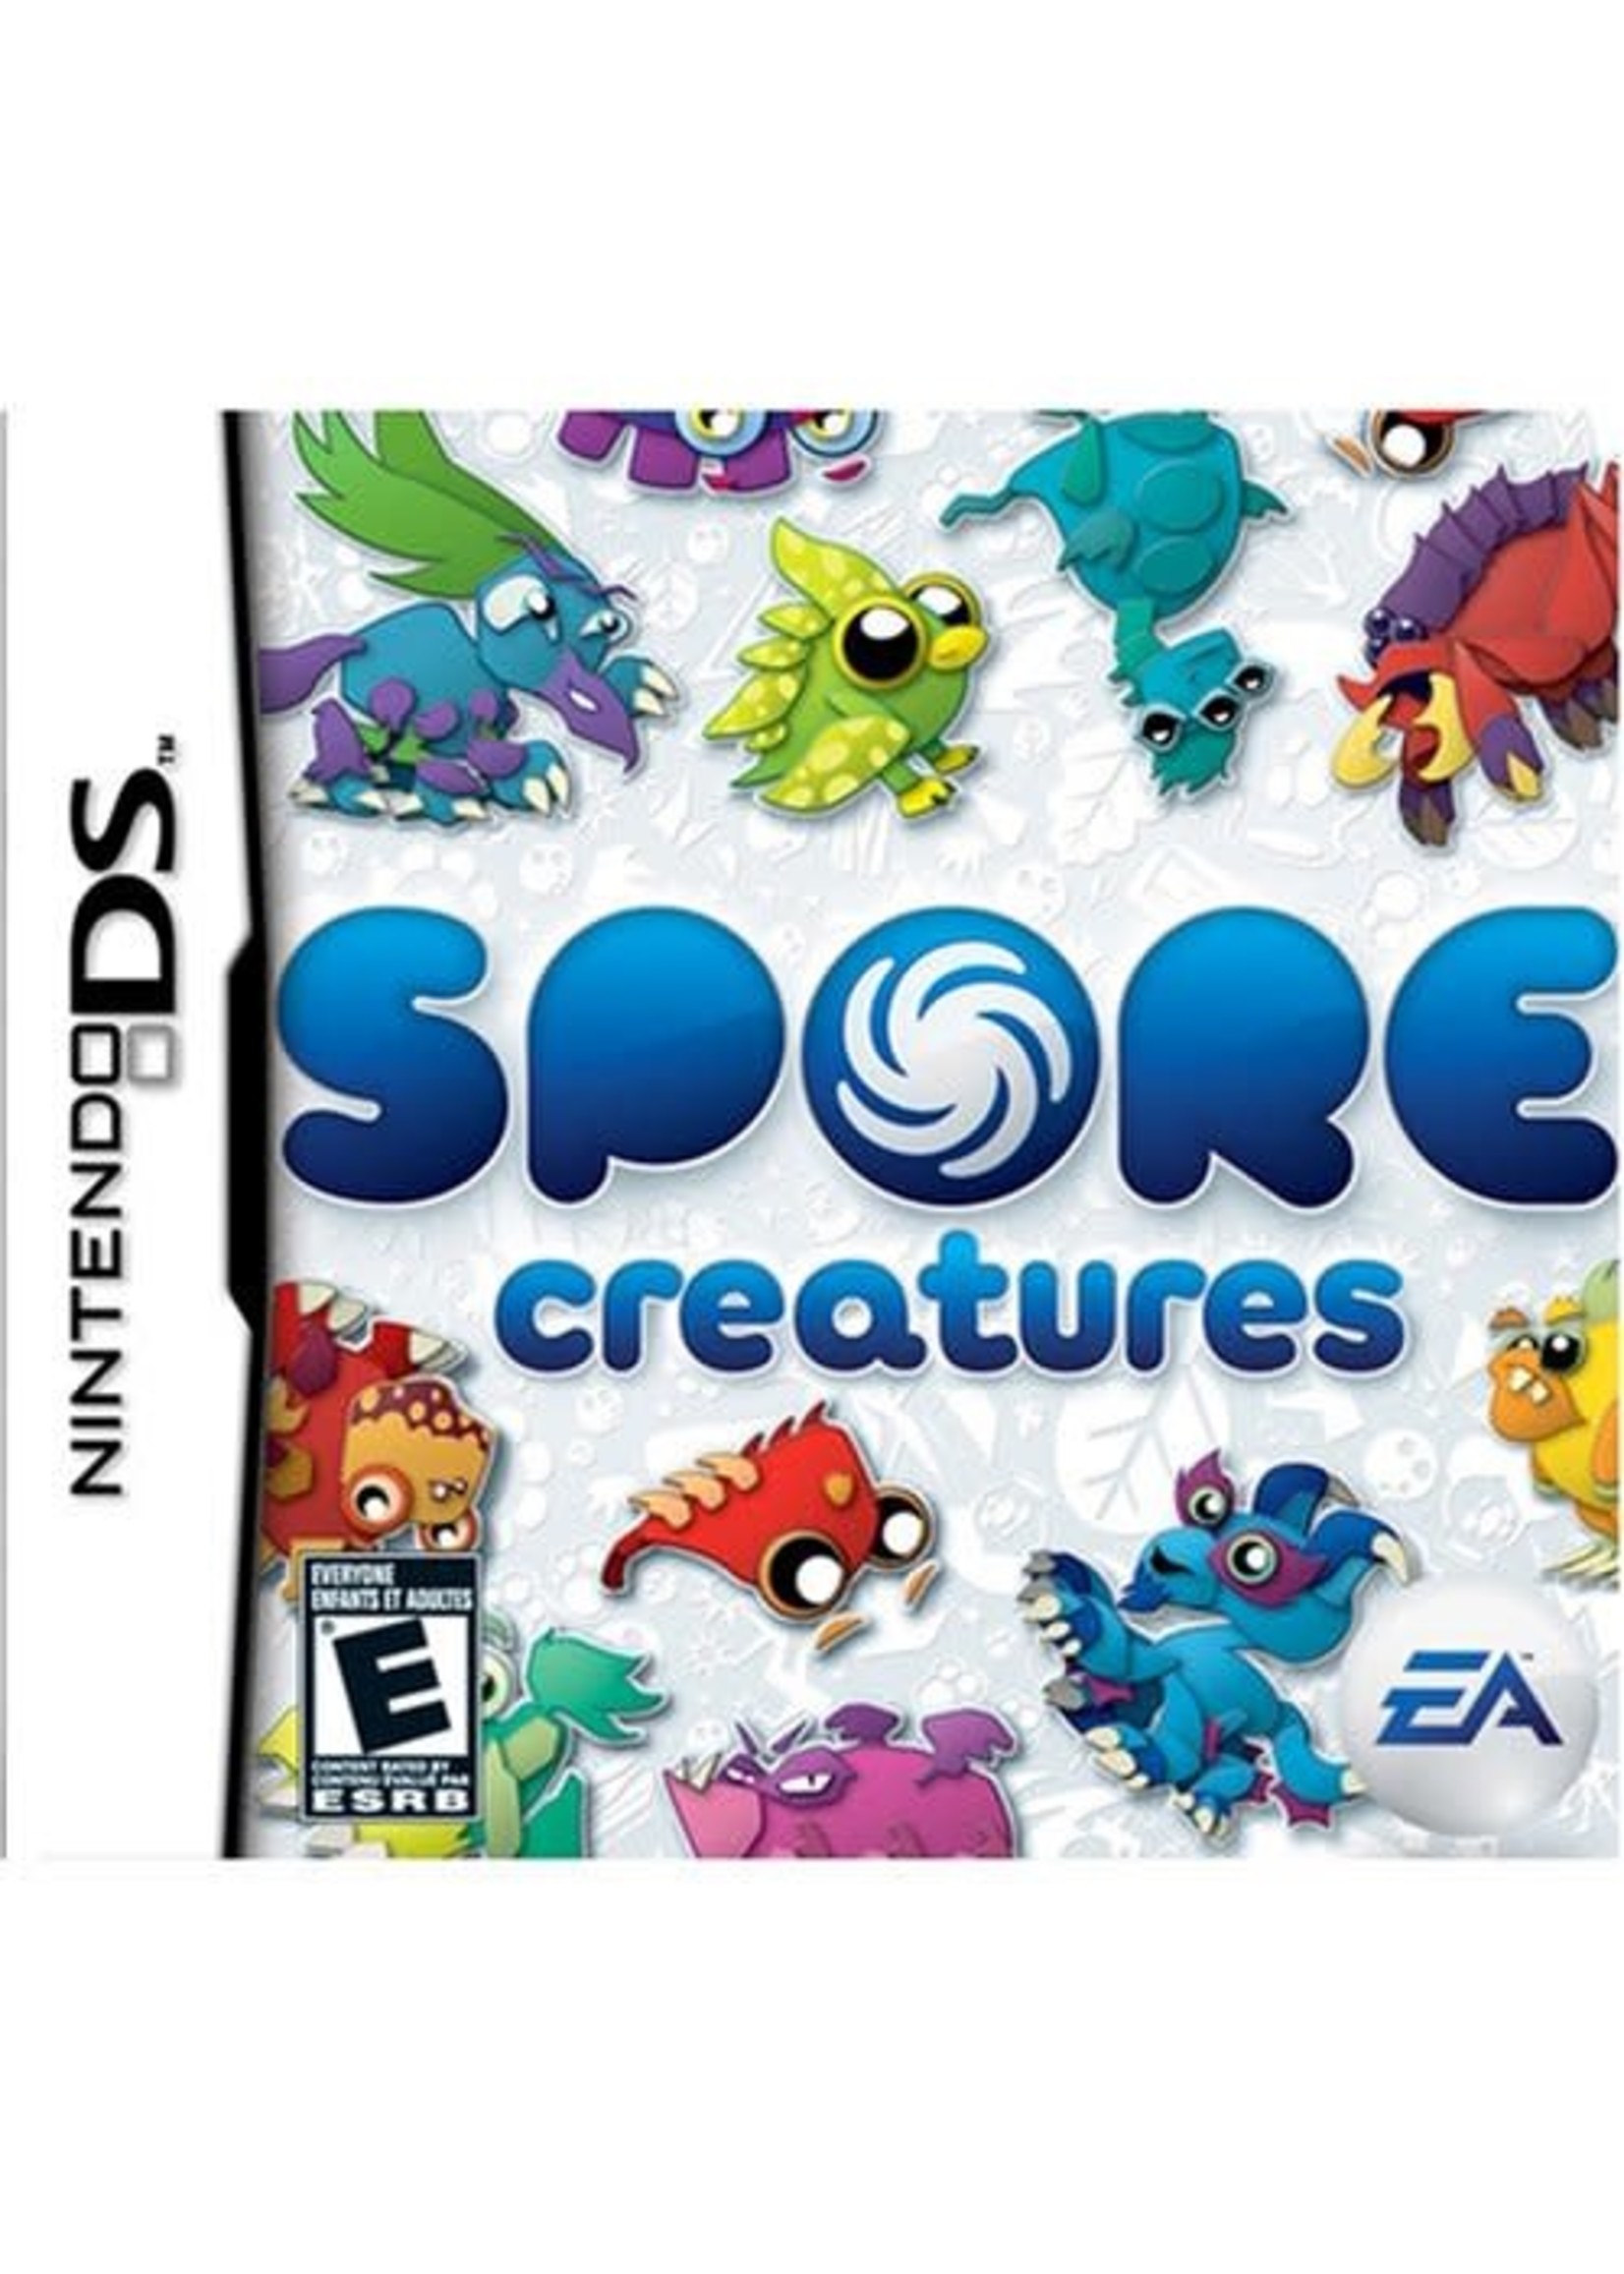 Nintendo DS Spore Creatures